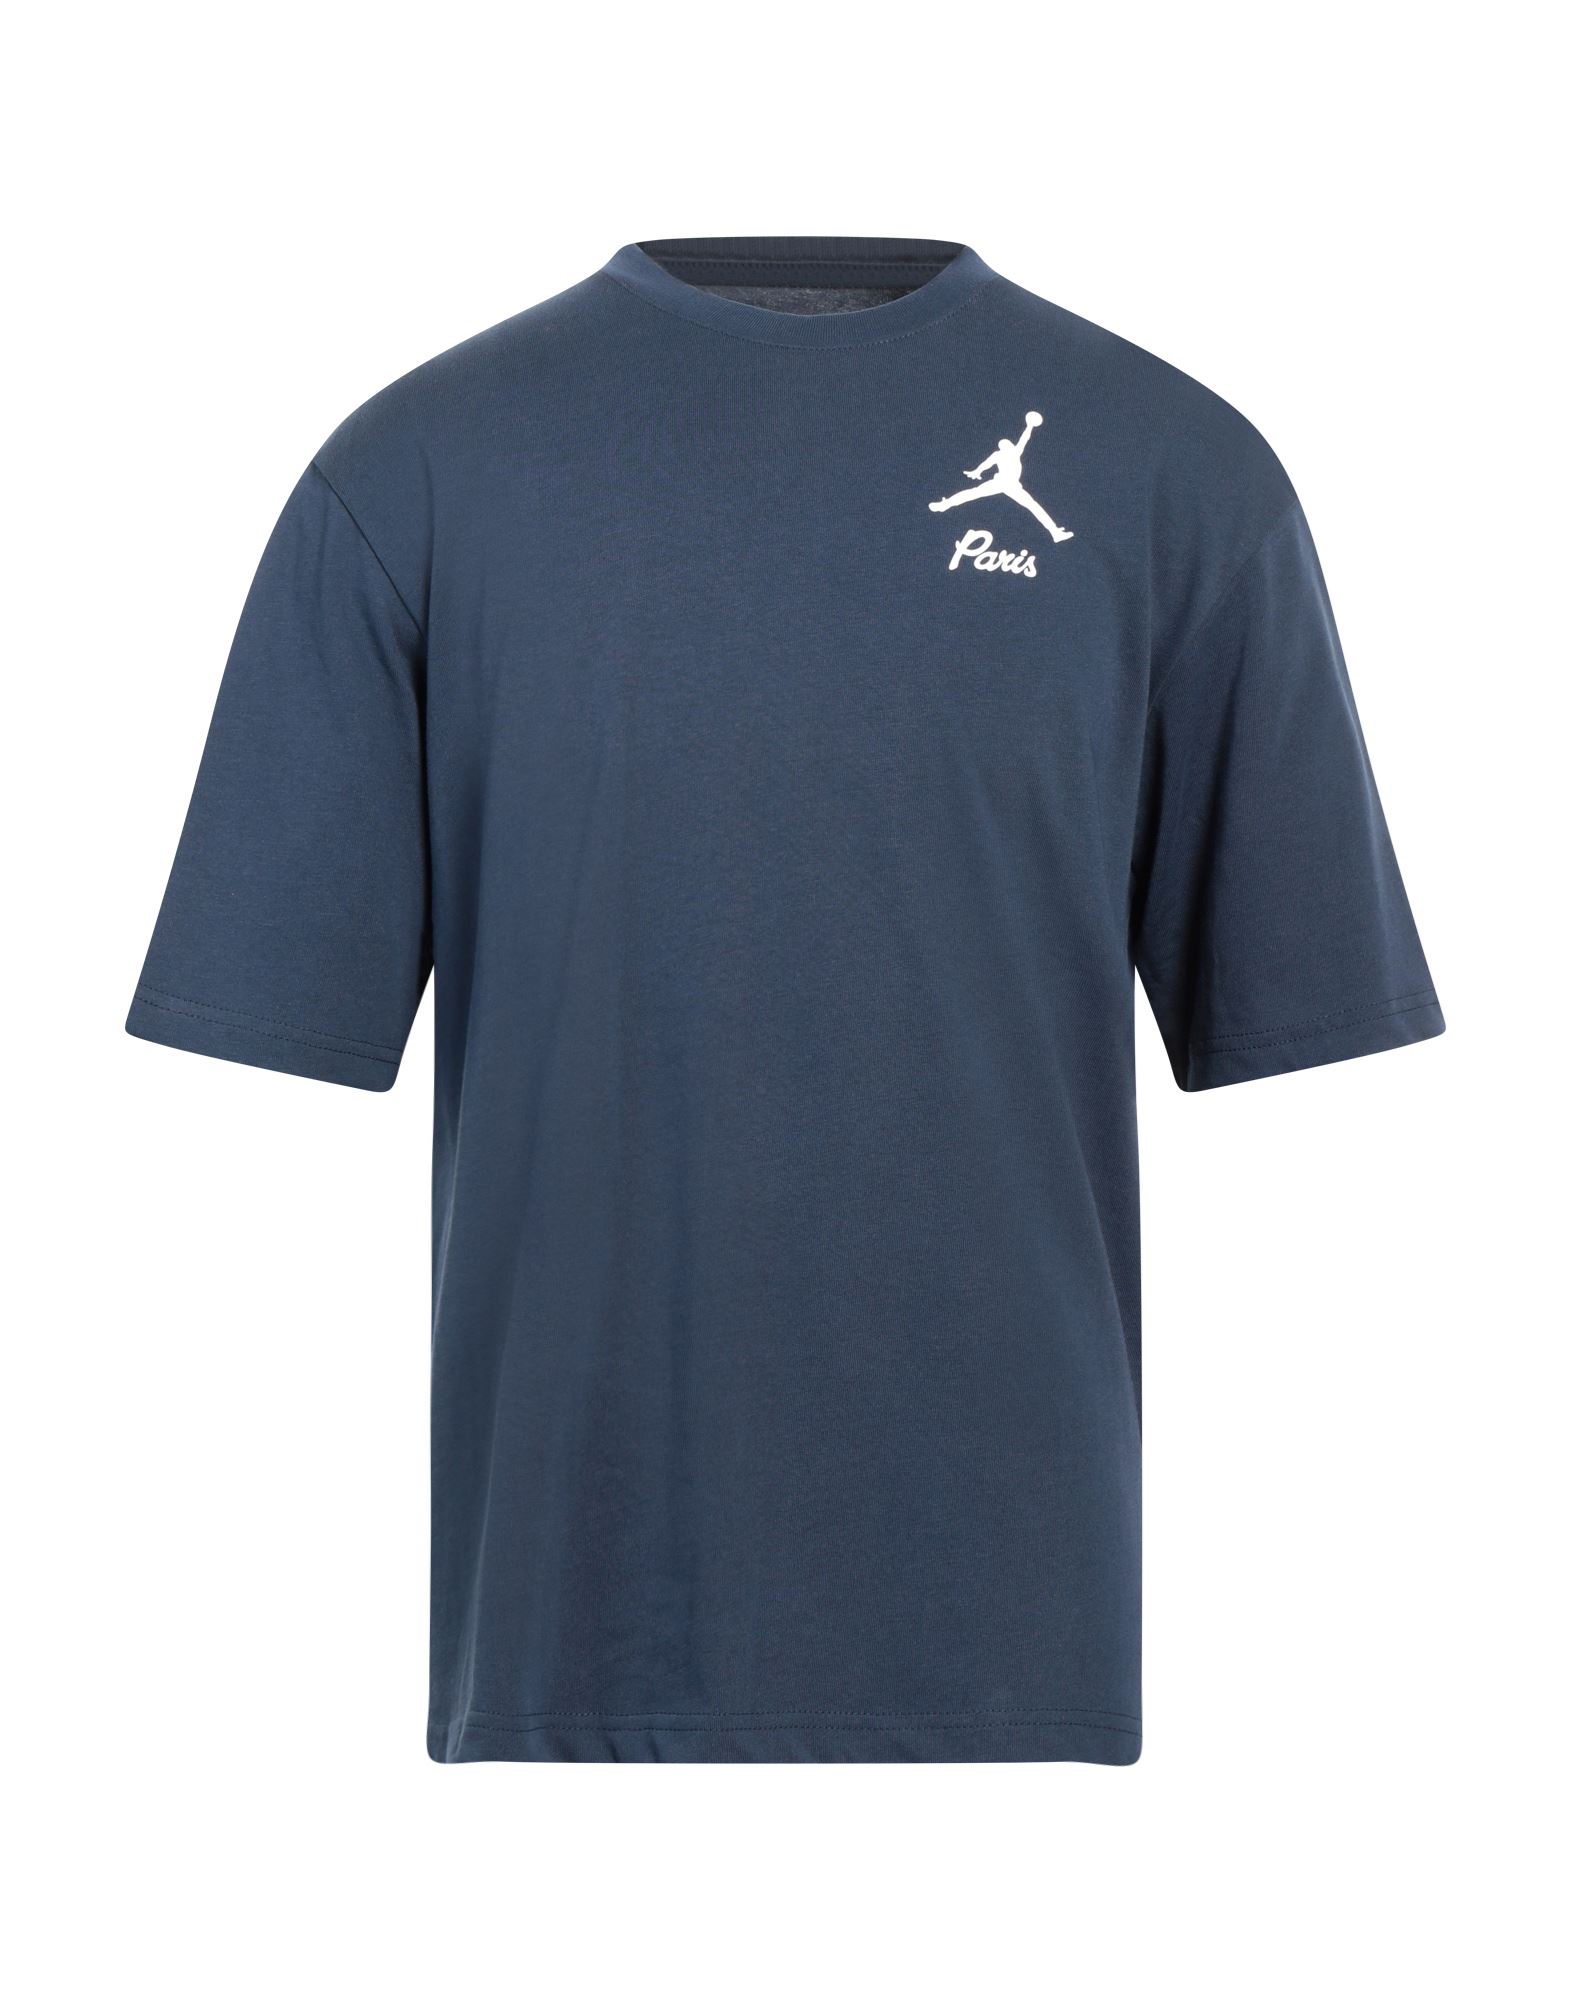 JORDAN T-shirts Herren Marineblau von JORDAN